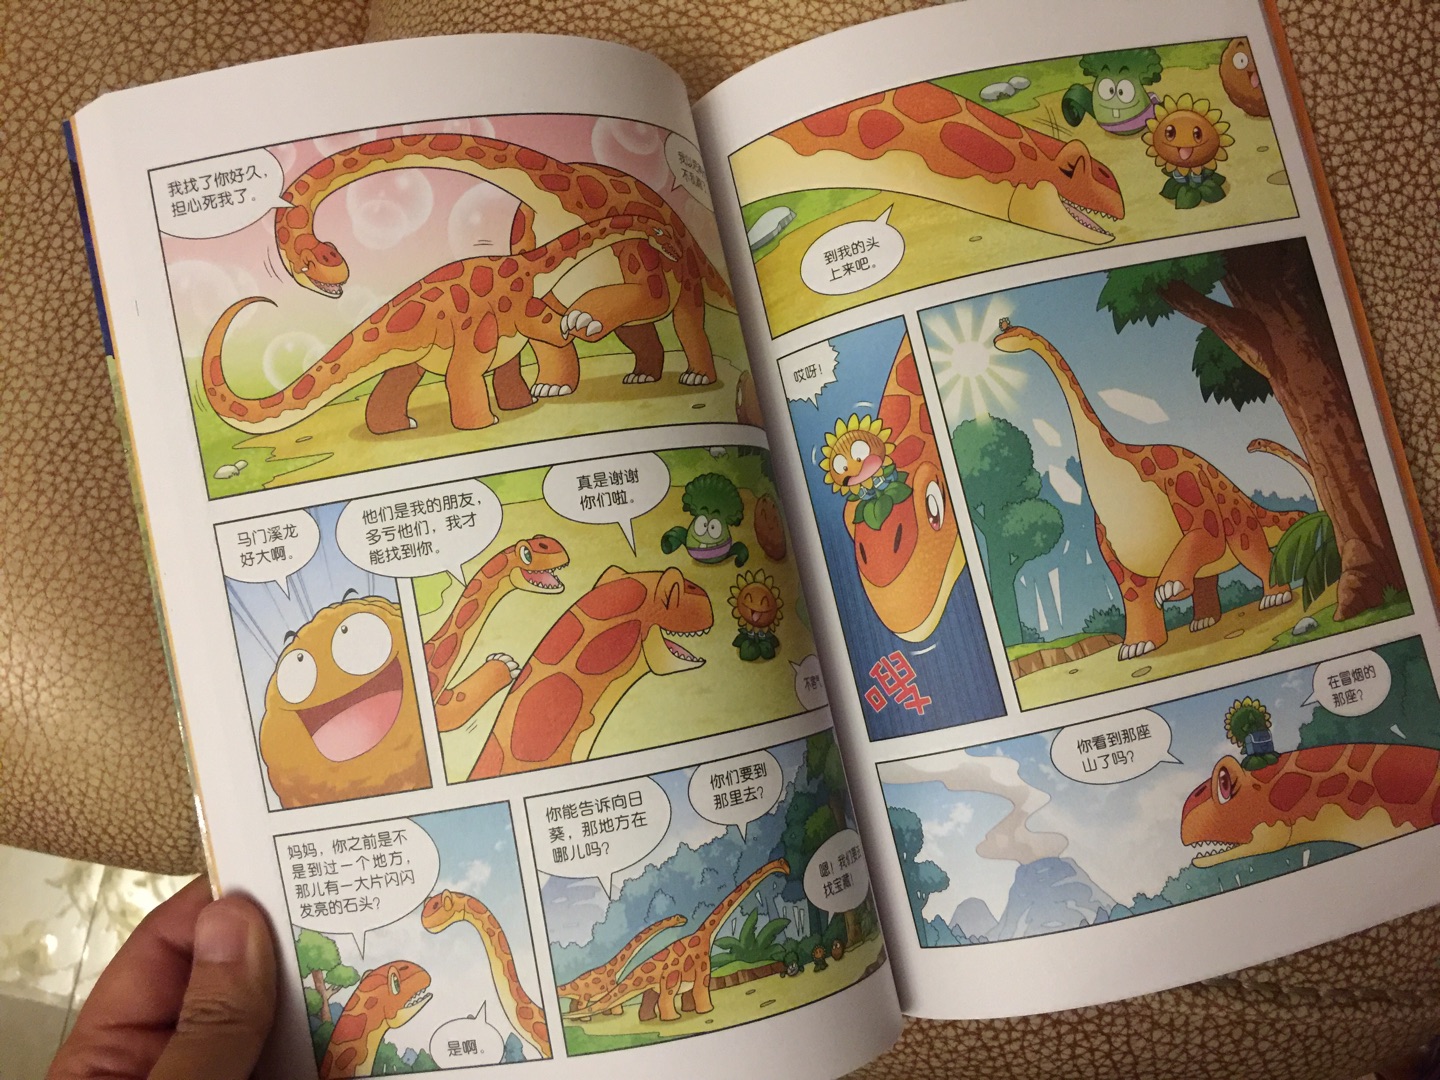 孩子一直哦喜欢植物大战僵尸系列的图书还有恐龙系列产品 笑江南的漫画不错。几乎买全了。